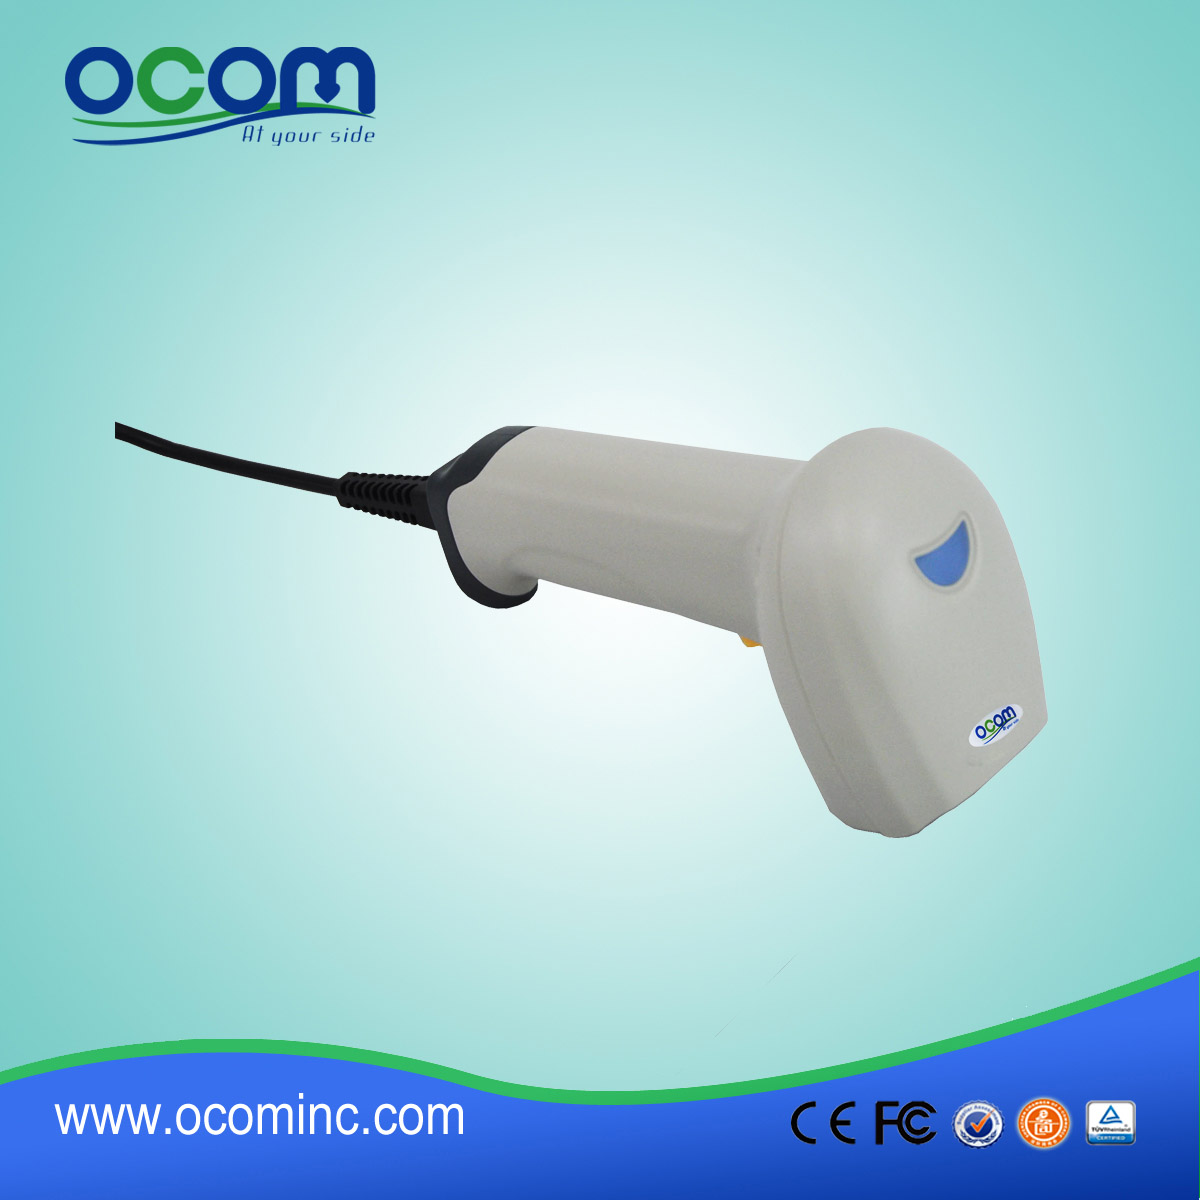 中国制造的手持式激光条码扫描器-OCBS-L006